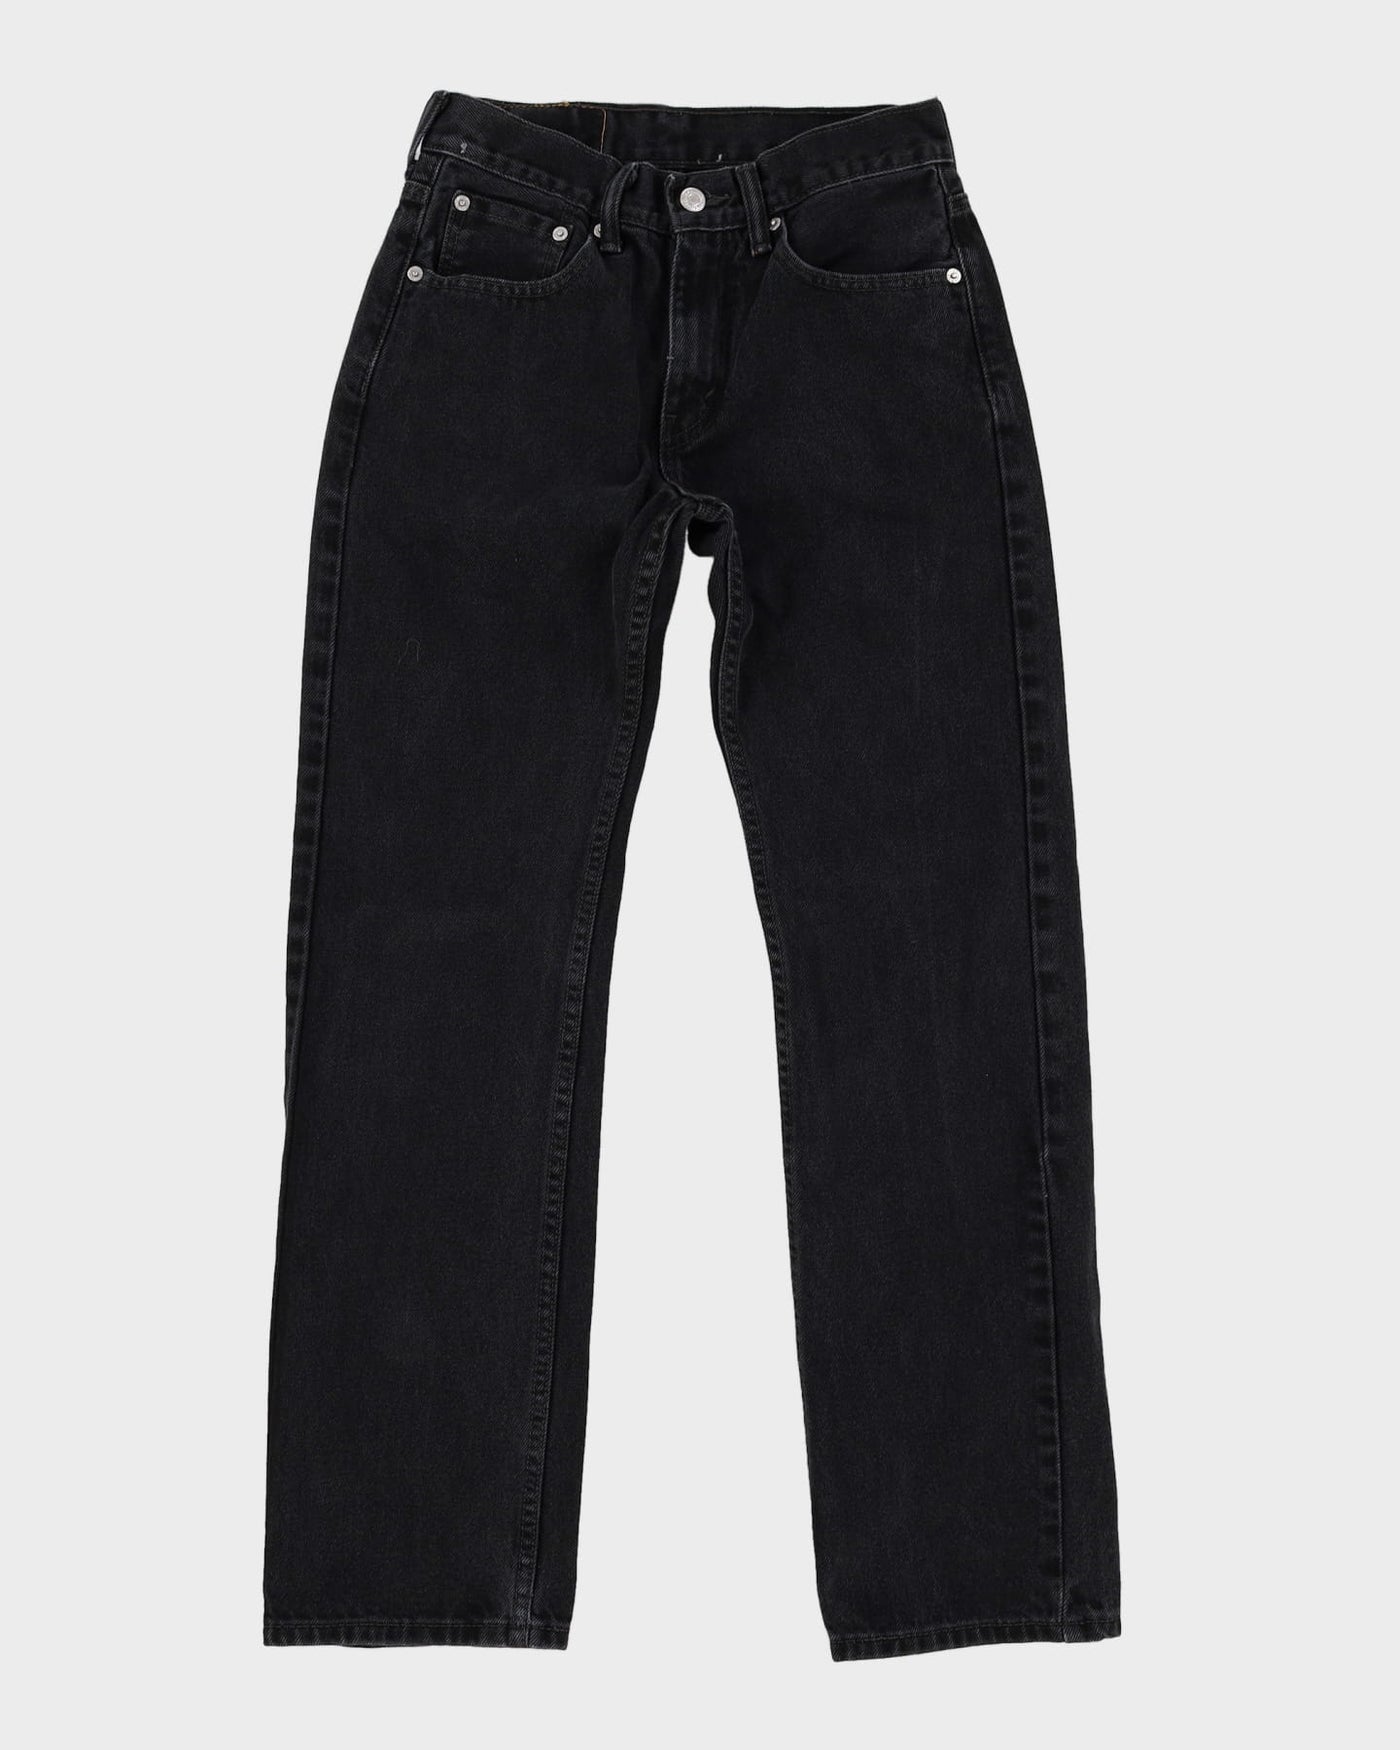 Levi's 501 Black Dark Wash Jeans - W28 L31